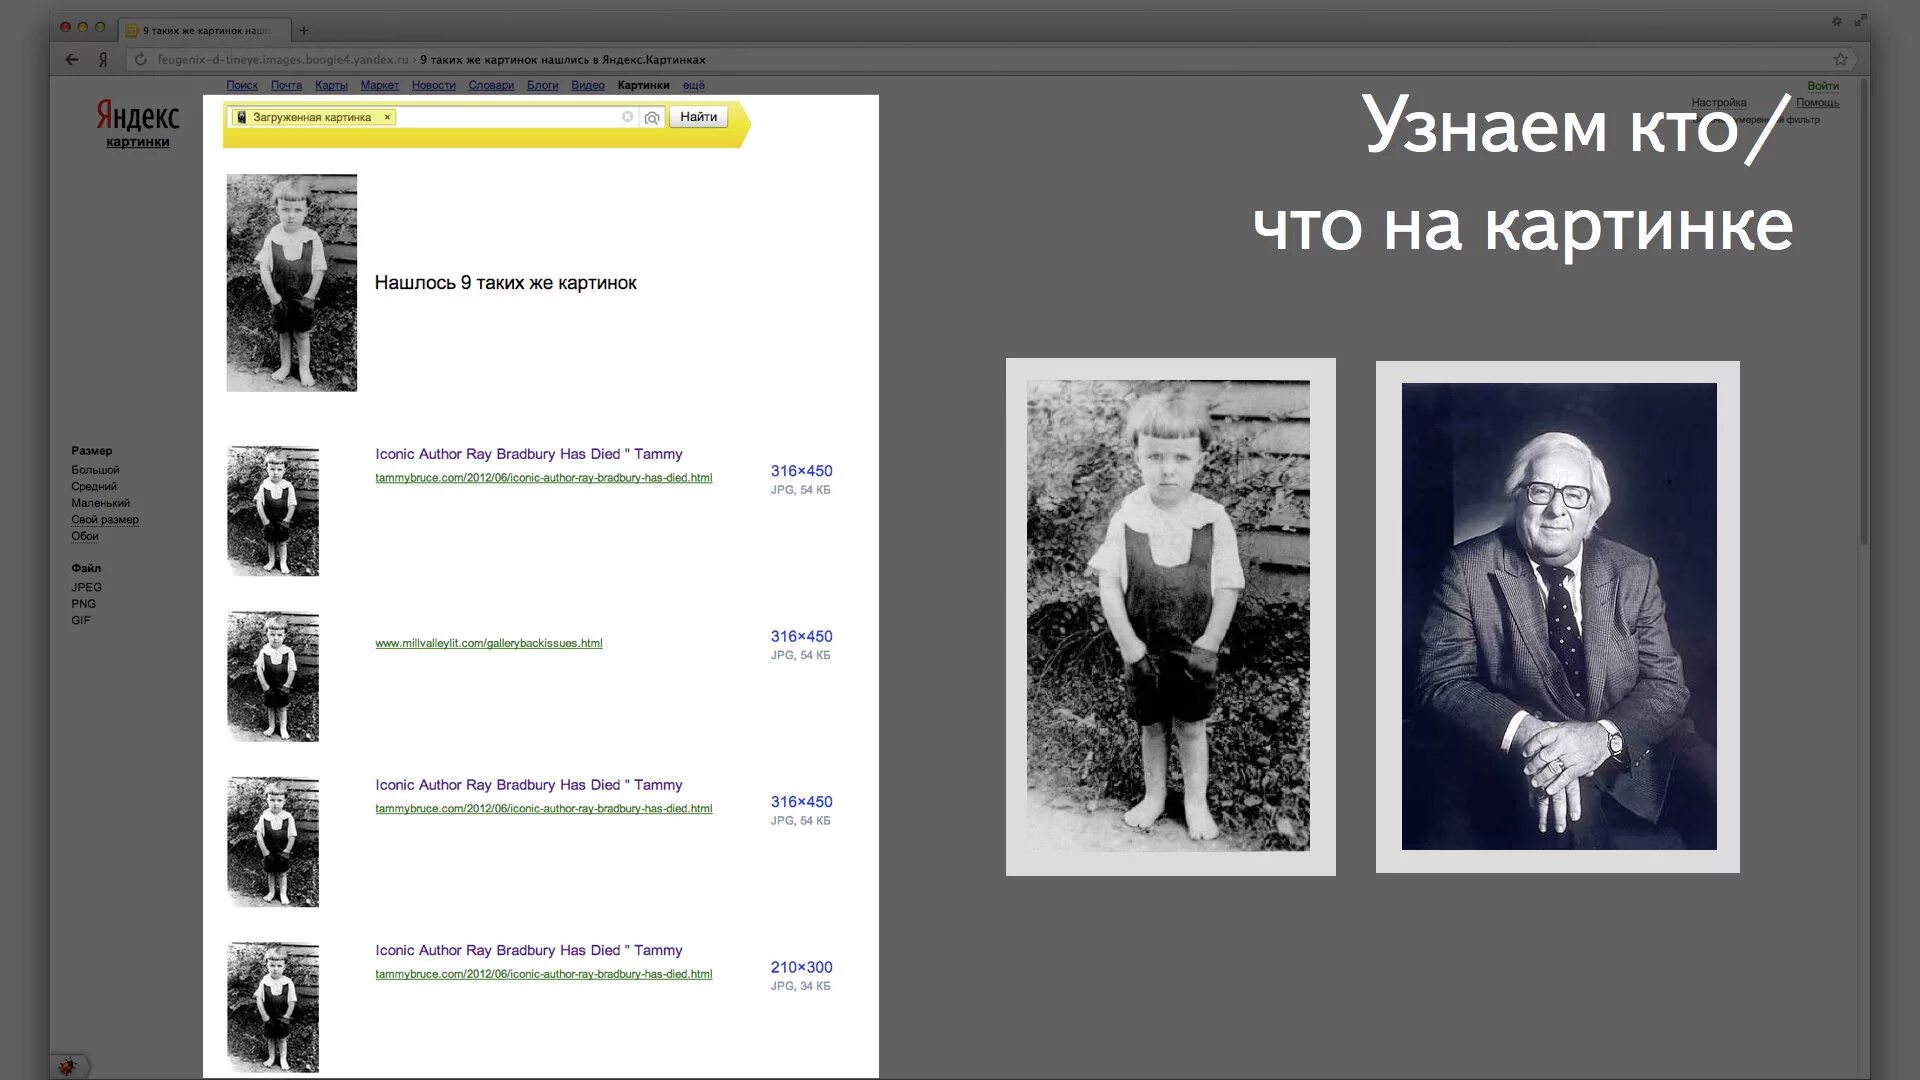 Найти фото по изображению. Яндекс картинки. Поиск по картинке Яндекс. Найти по фото в Яндексе картинку. Поиск изображения по картинке Яндекс.